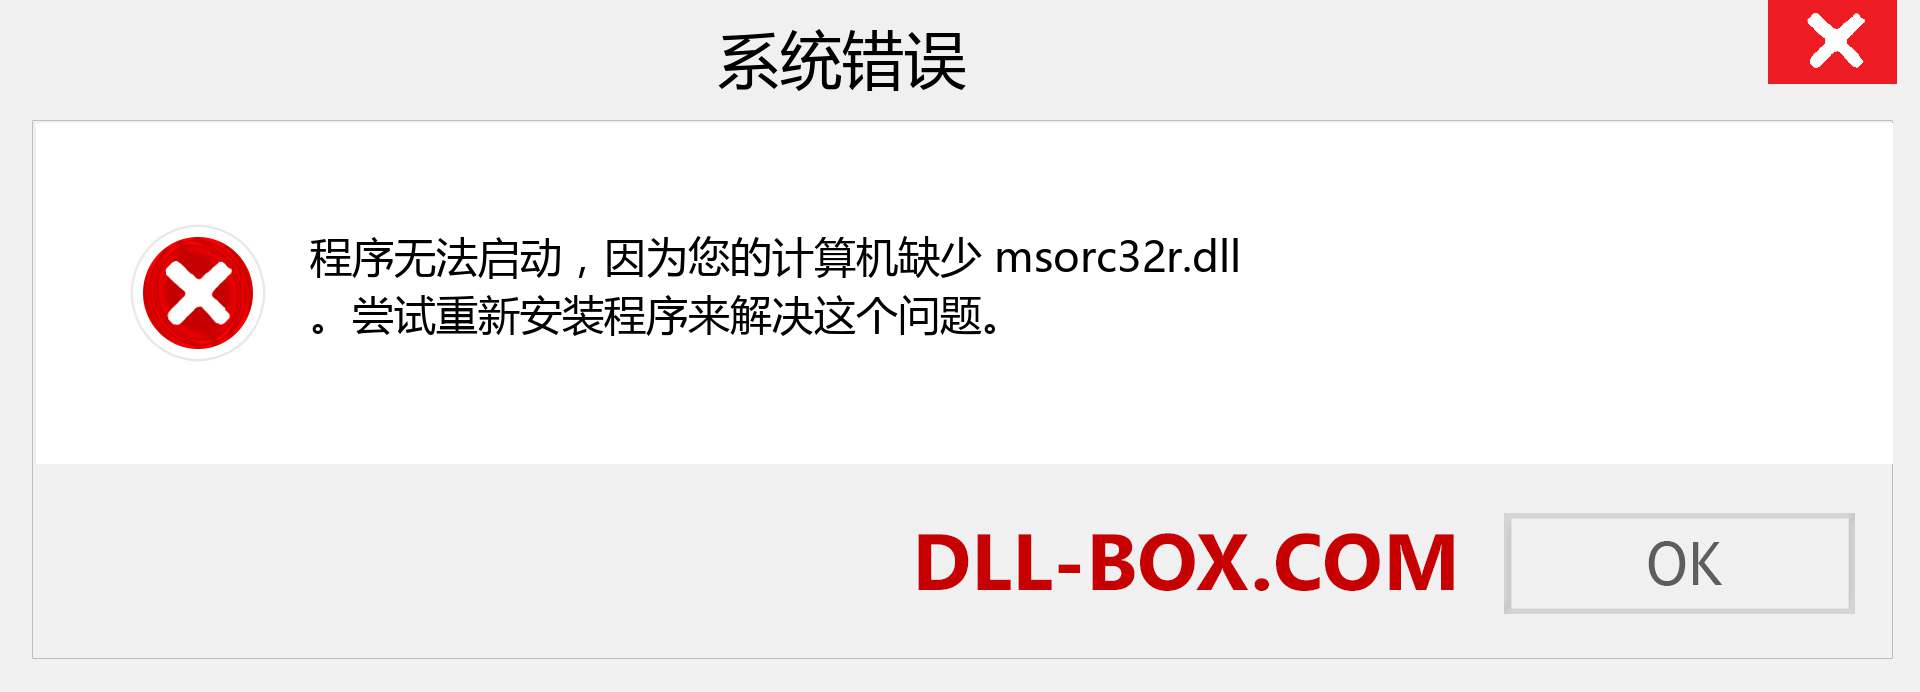 msorc32r.dll 文件丢失？。 适用于 Windows 7、8、10 的下载 - 修复 Windows、照片、图像上的 msorc32r dll 丢失错误